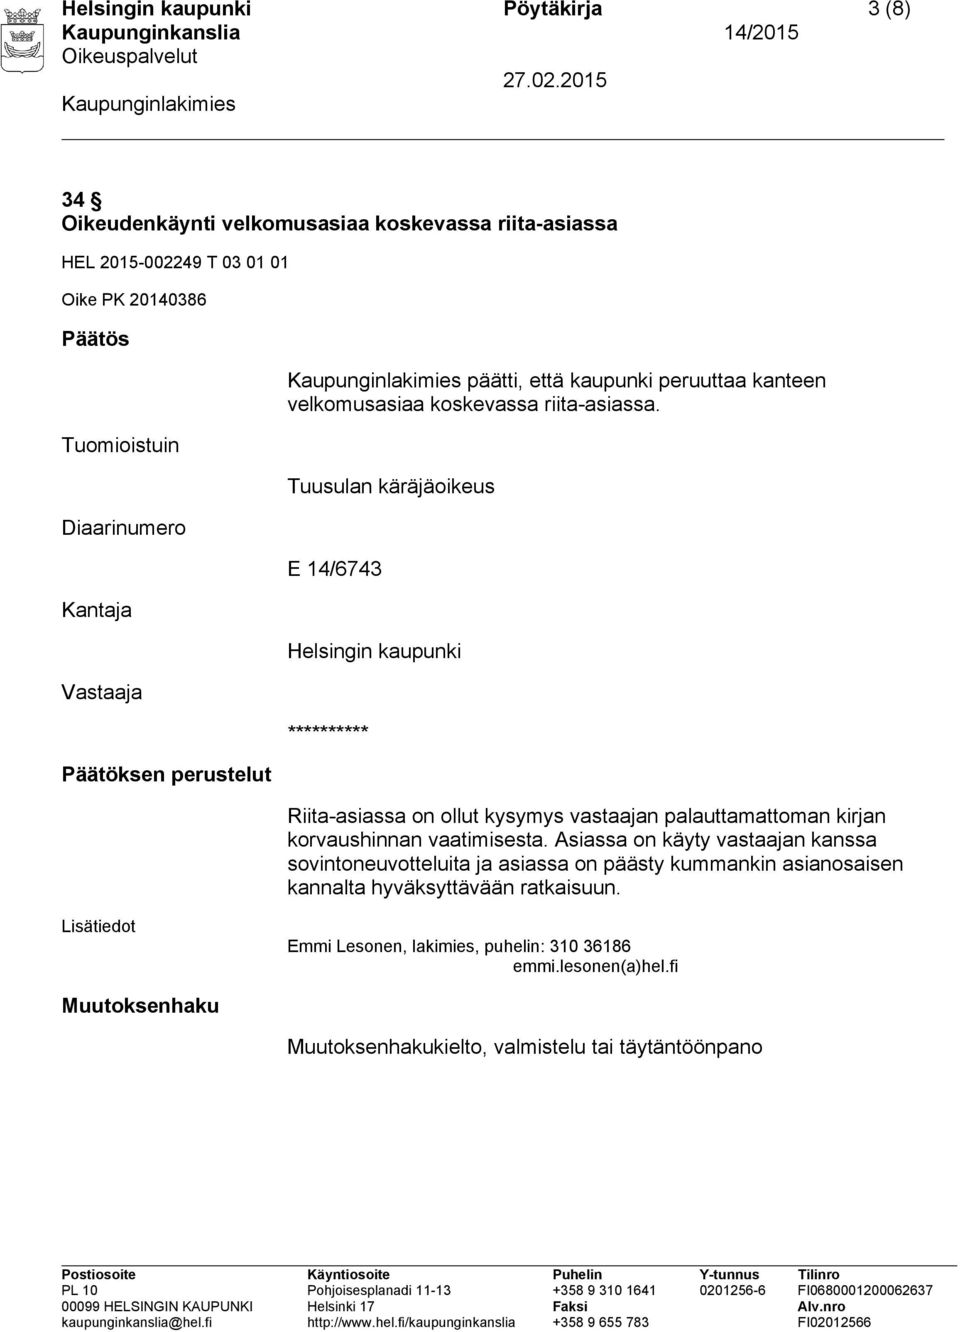 Tuusulan käräjäoikeus E 14/6743 Helsingin kaupunki ********** Riita-asiassa on ollut kysymys vastaajan palauttamattoman kirjan korvaushinnan vaatimisesta.